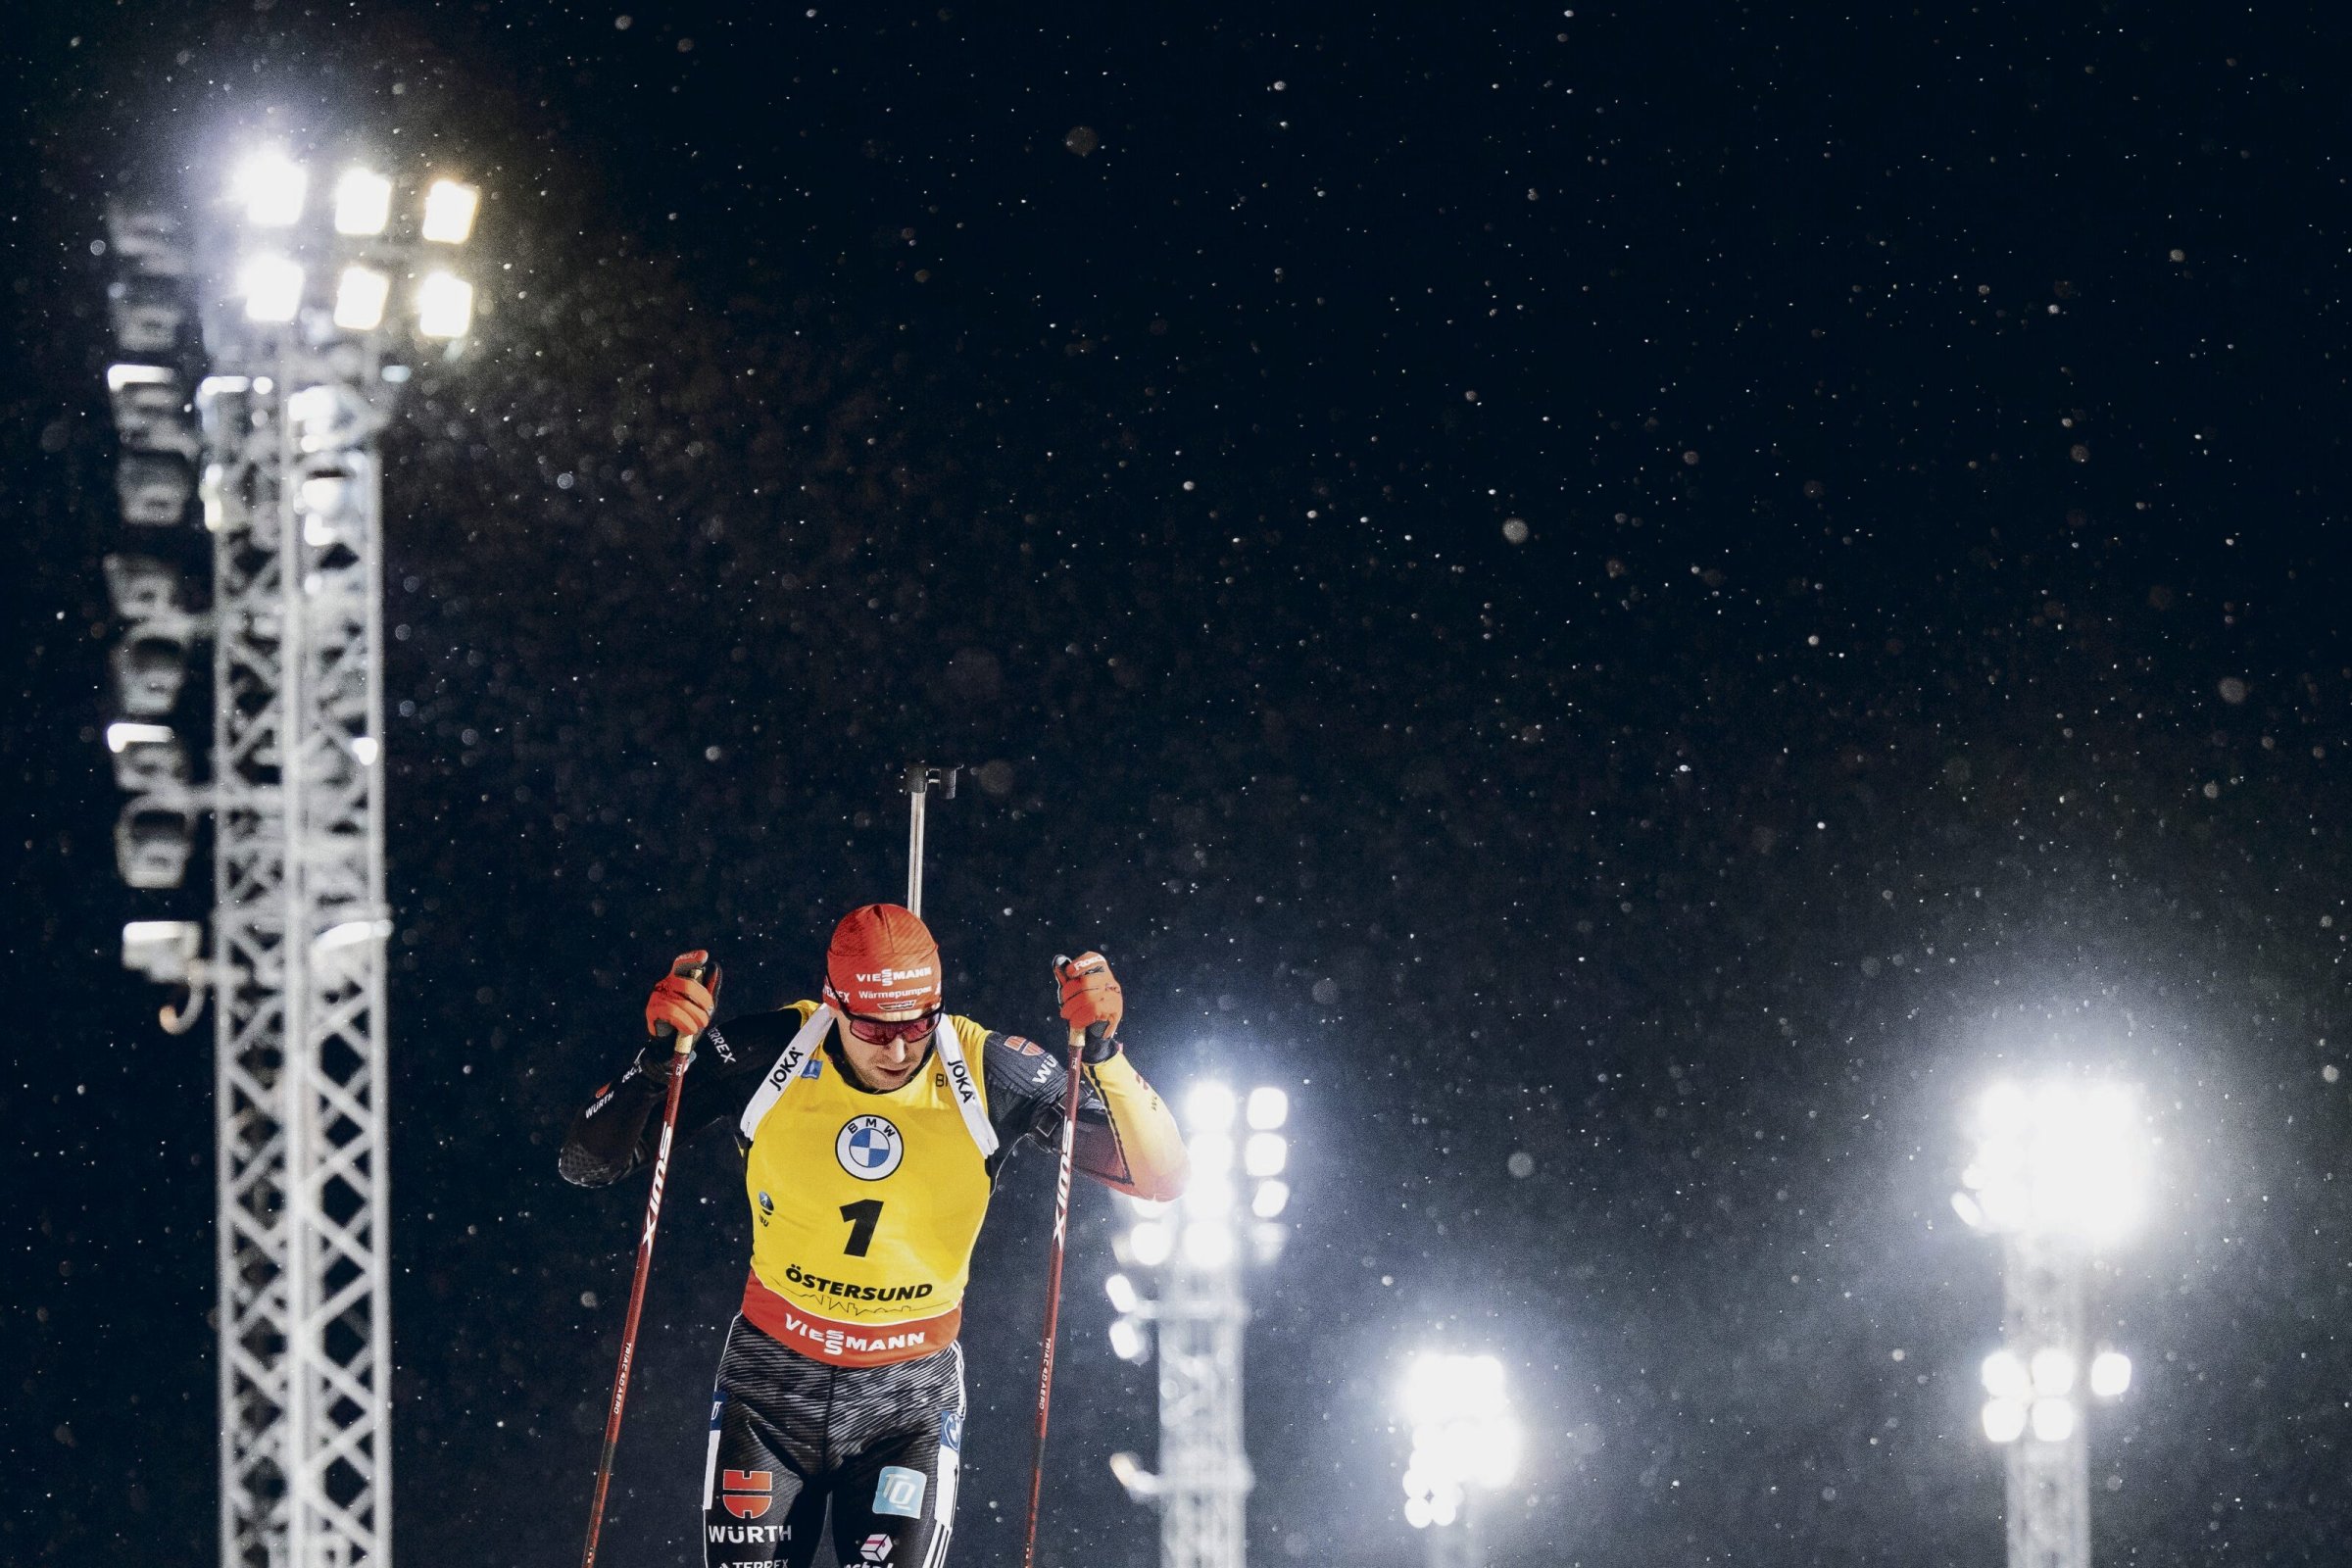 Sports d’hiver : les Allemands connaissent plus de succès que jamais en biathlon